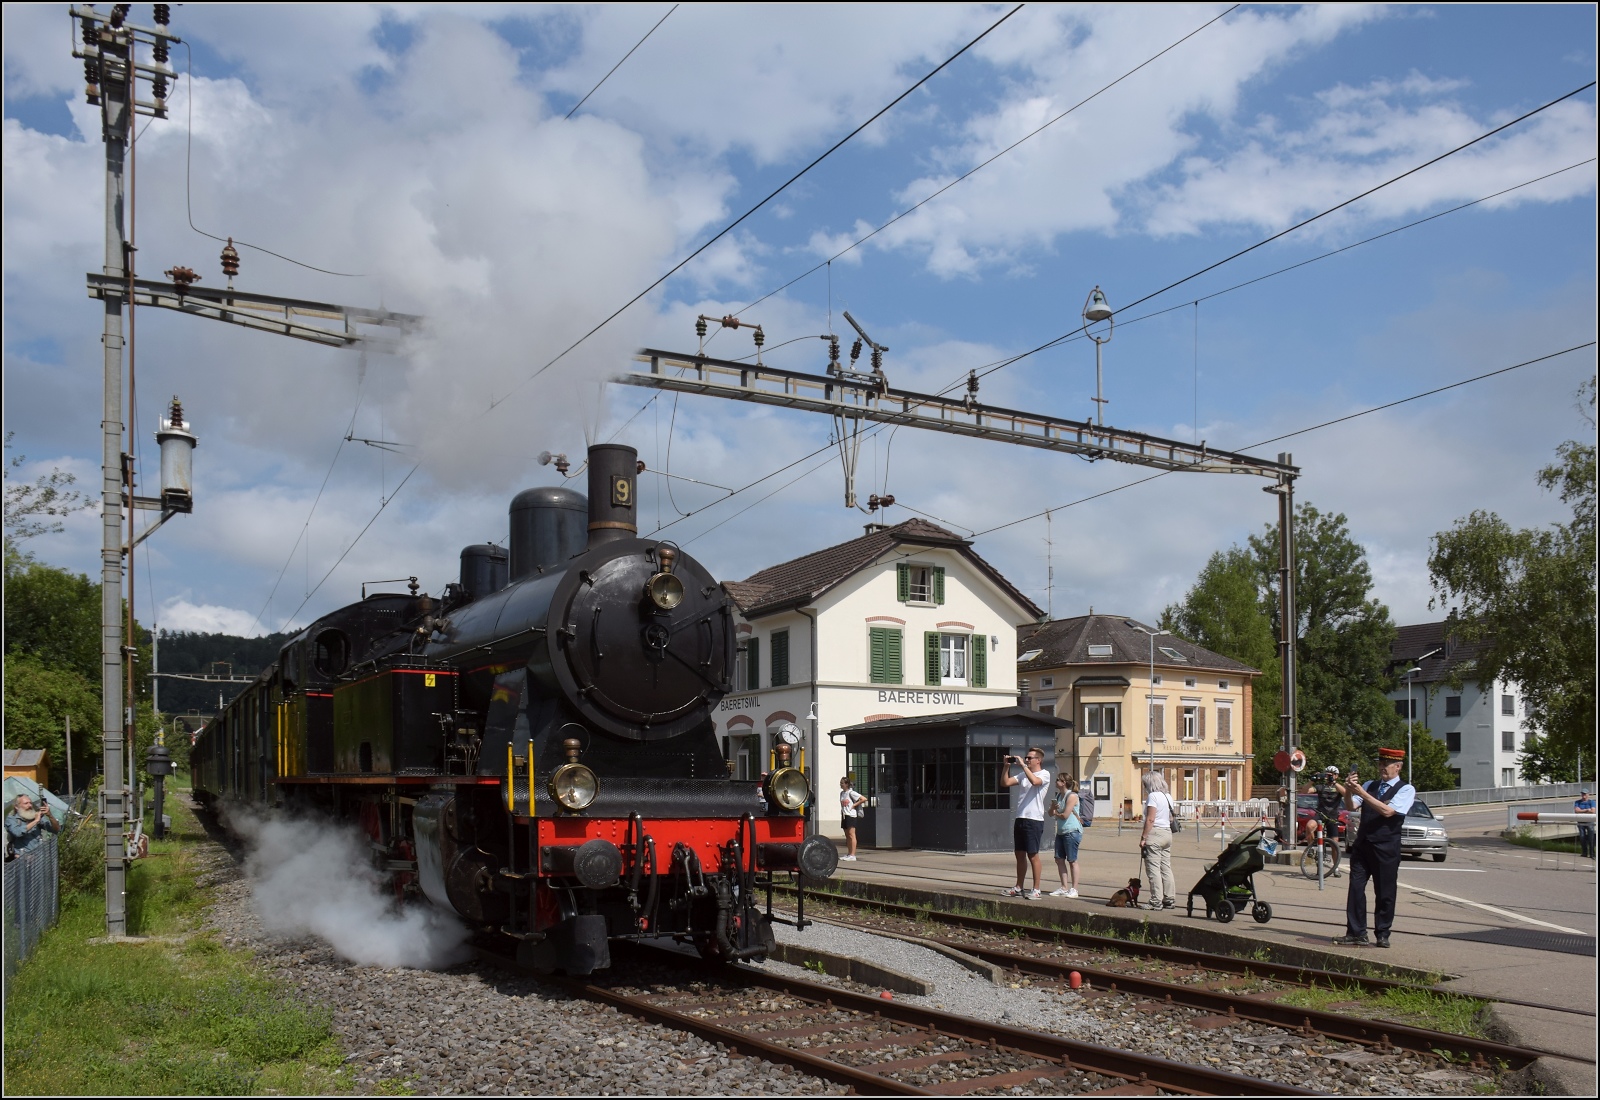 Fahrtag im Zrcher Oberland. 

Abfahrt des Museumszuges mit Eb 3/5 der BT in Bretswil. Trotz zweiwchiger Betriebstage ist die Begeisterung der Eisenbahnfans an allen Ecken sichtbar. Juli 2023.